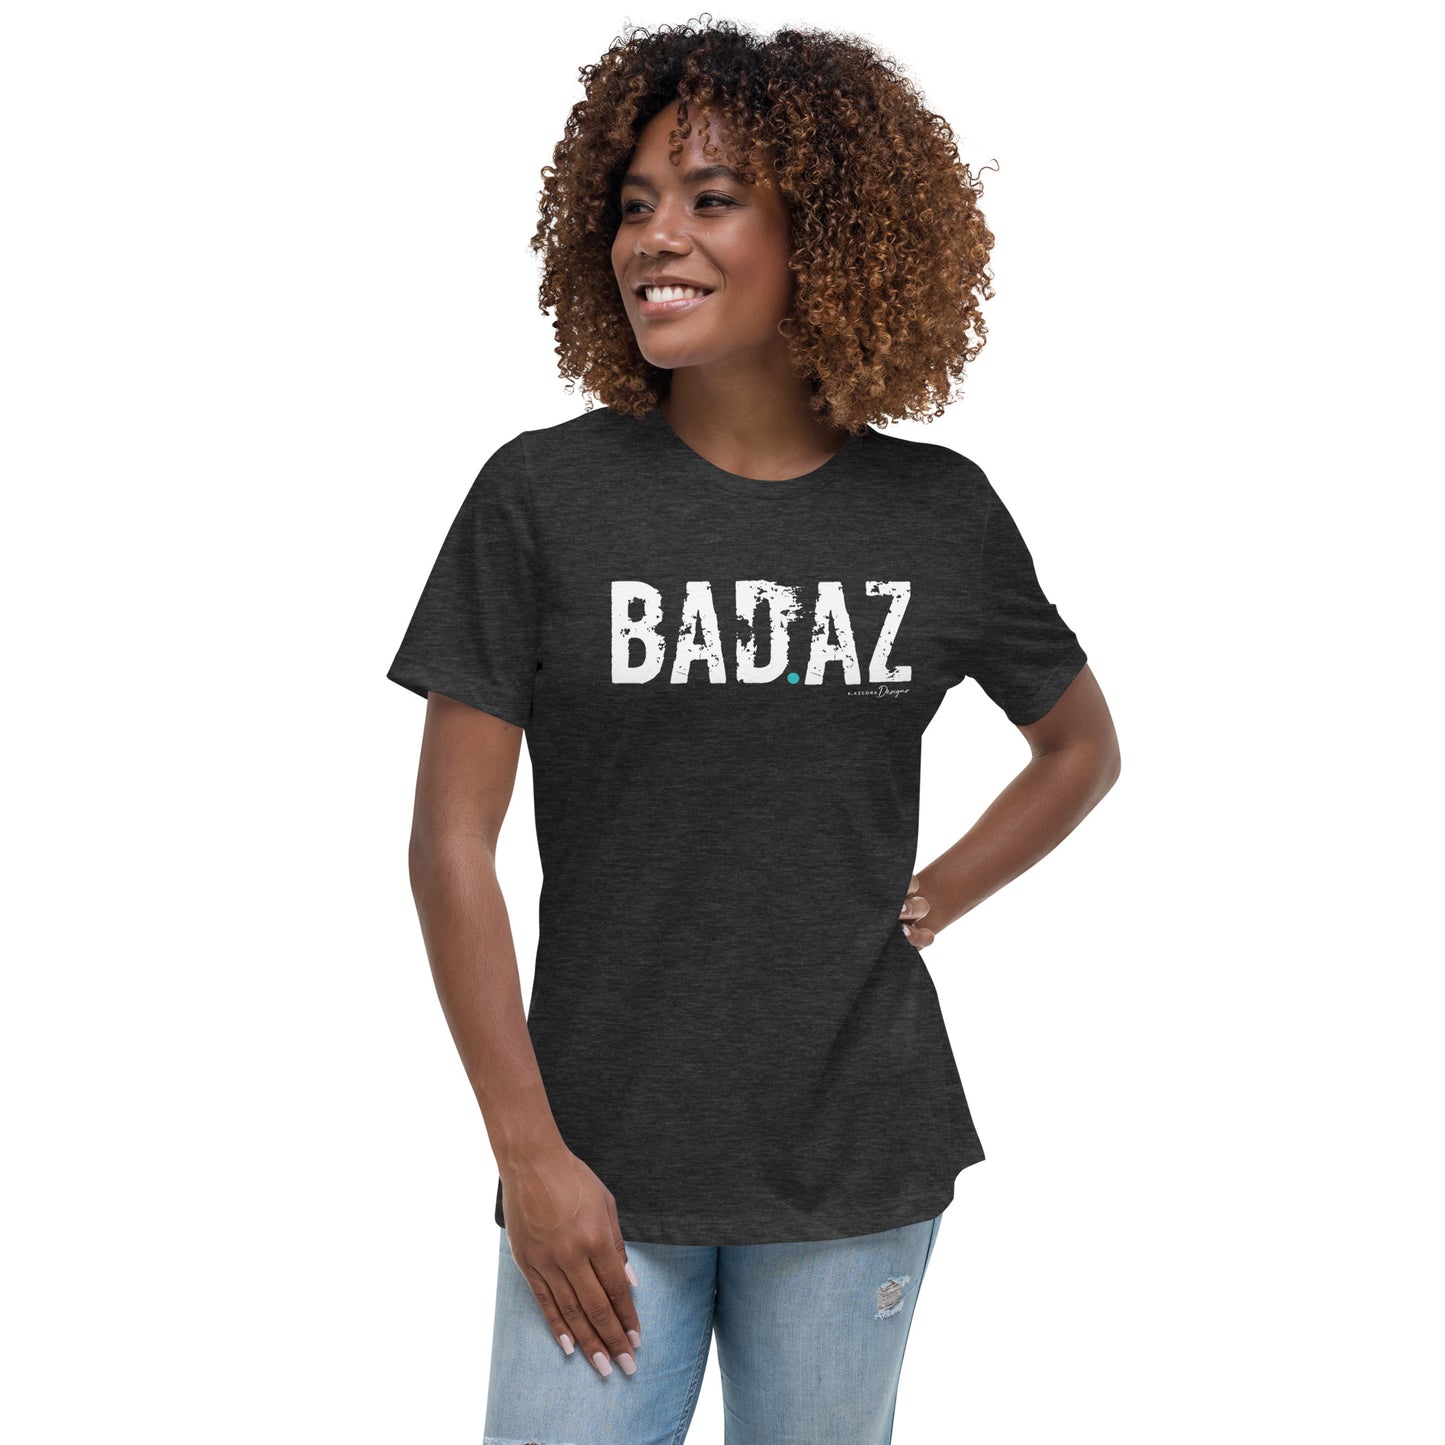 BAZ.AZ Women's Relaxed T-Shirt